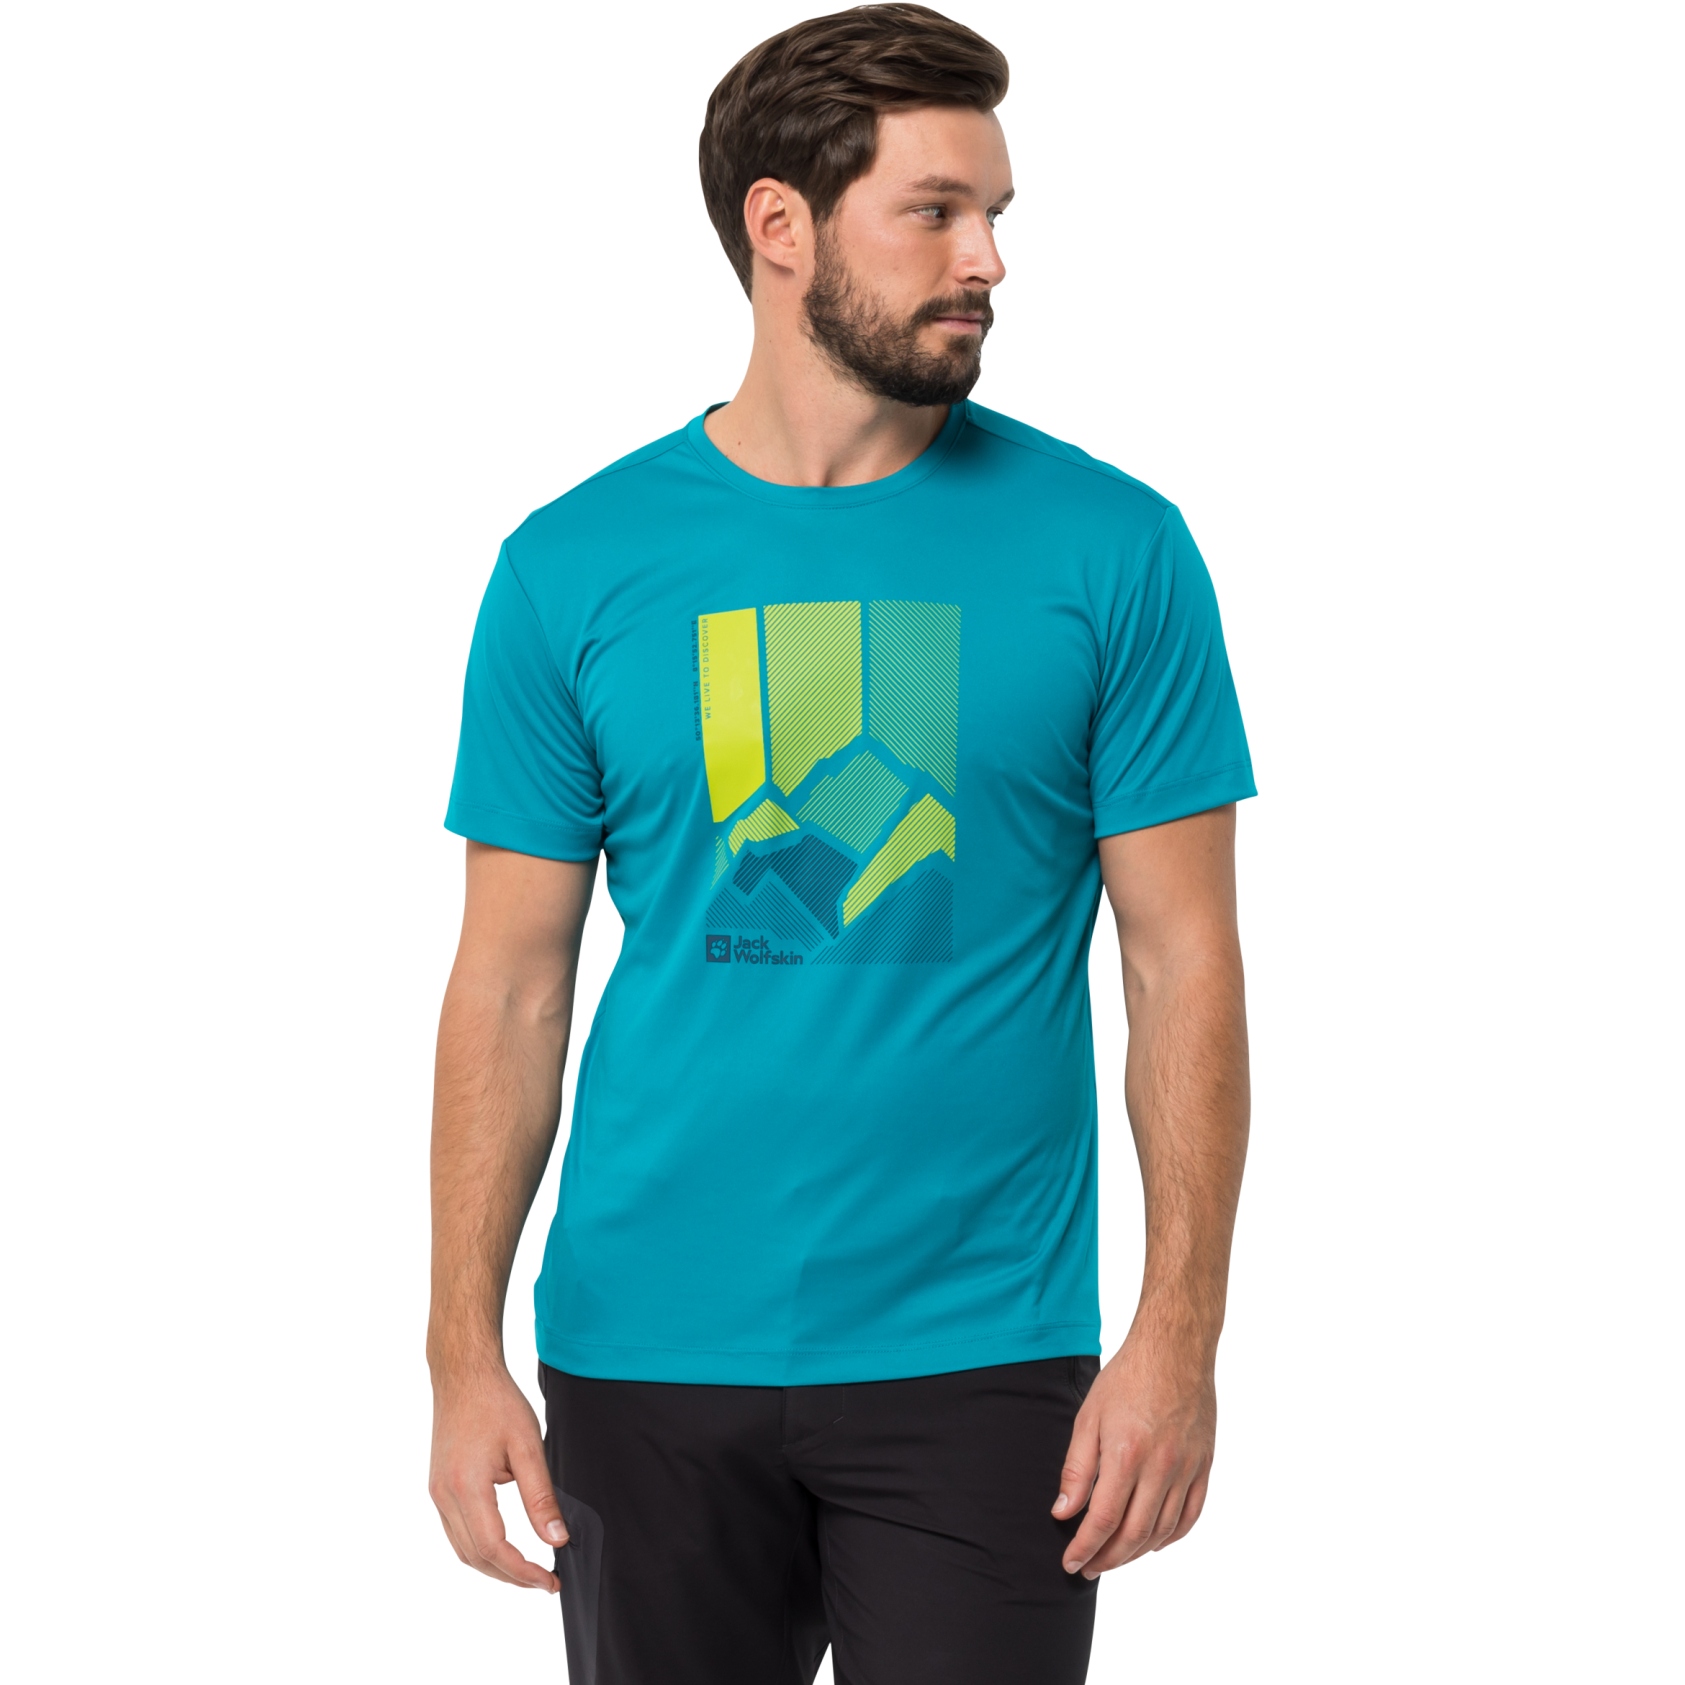 Bild von Jack Wolfskin Peak Graphic T-Shirt Herren - everest blue